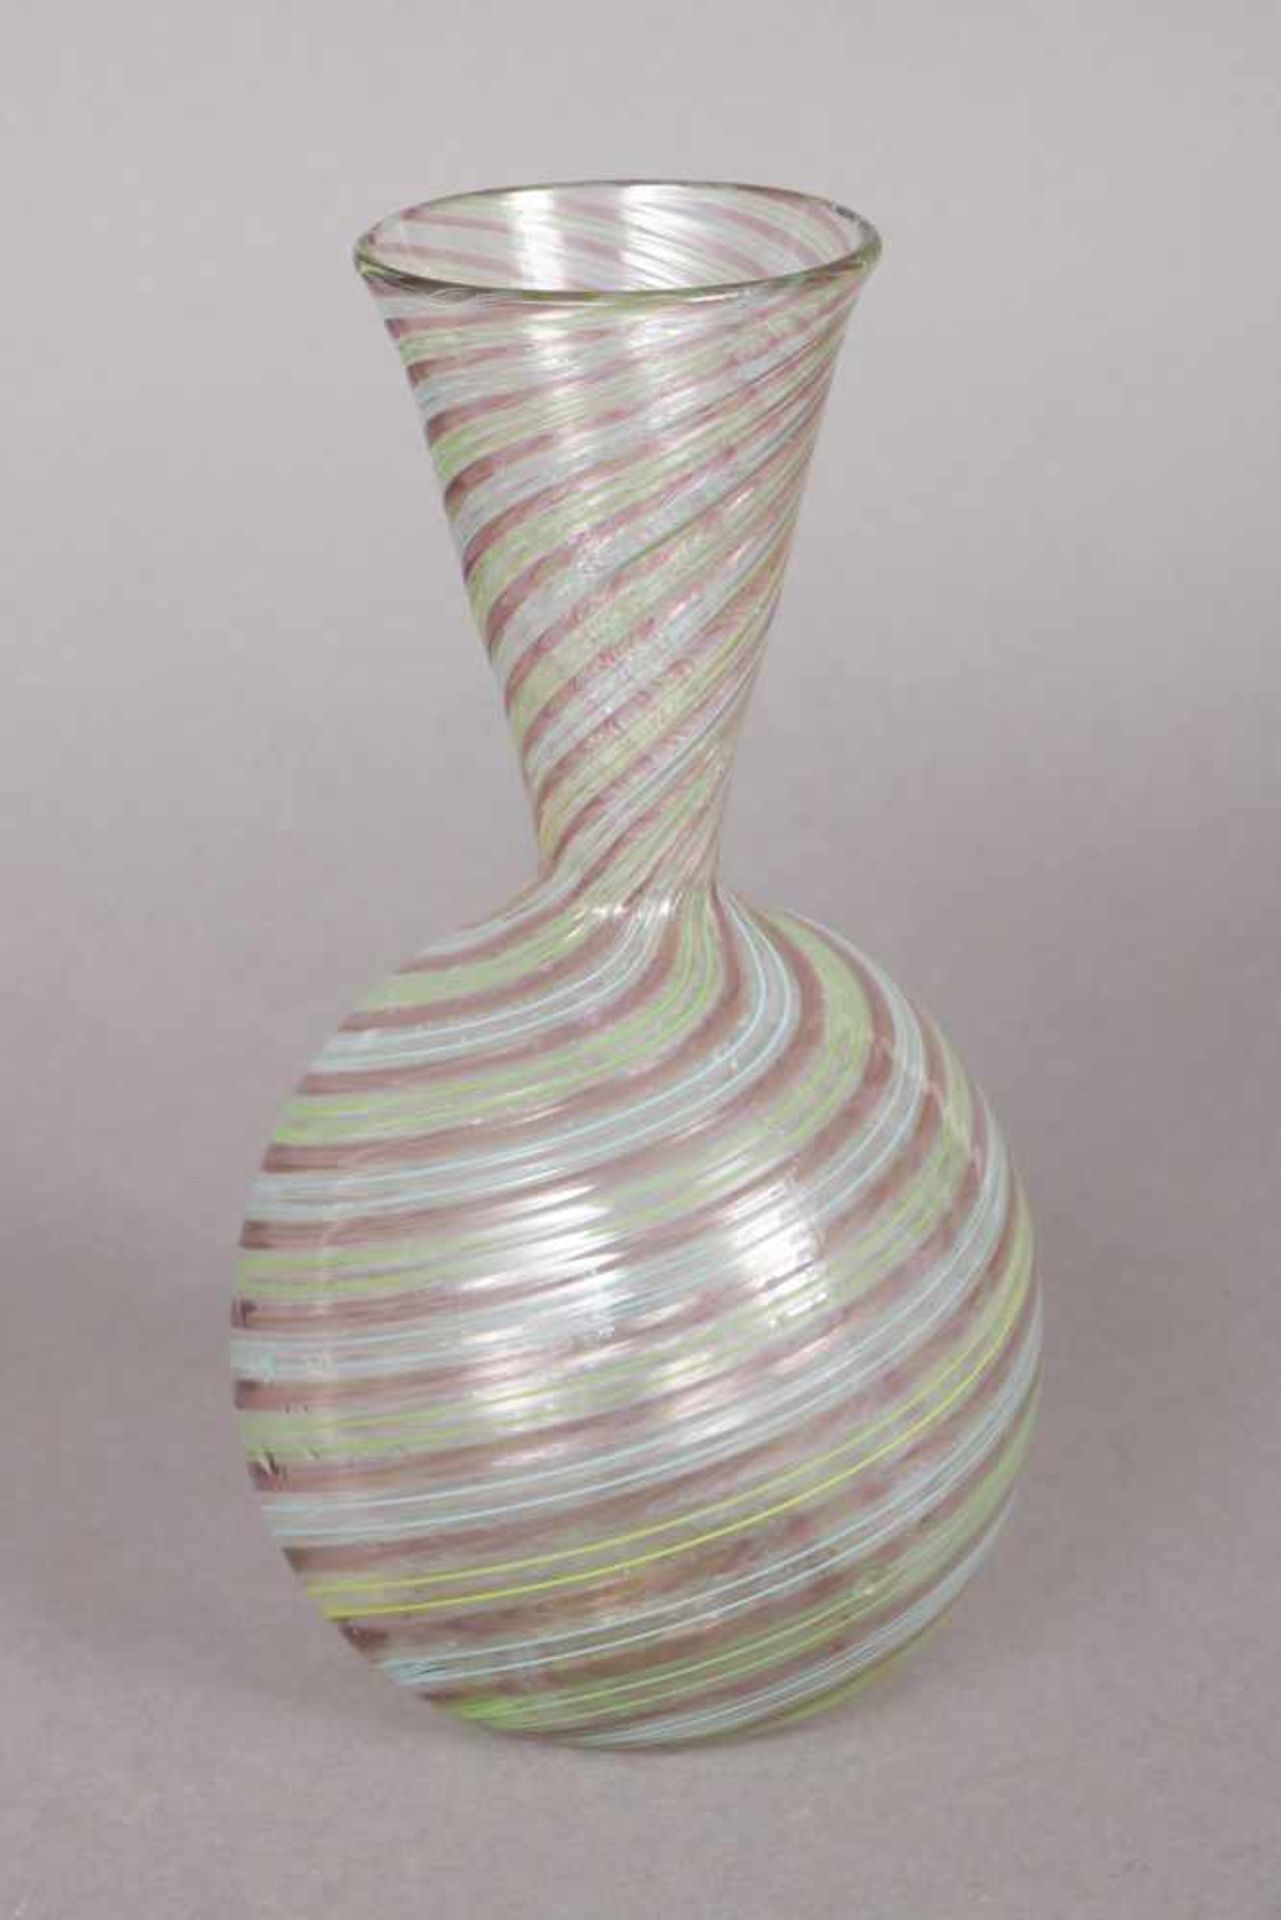 MURANO (wohl VENINI) Vase farbloses Glas mit grün-blau-violetten Fadeneinschmelzungen, bauchiger